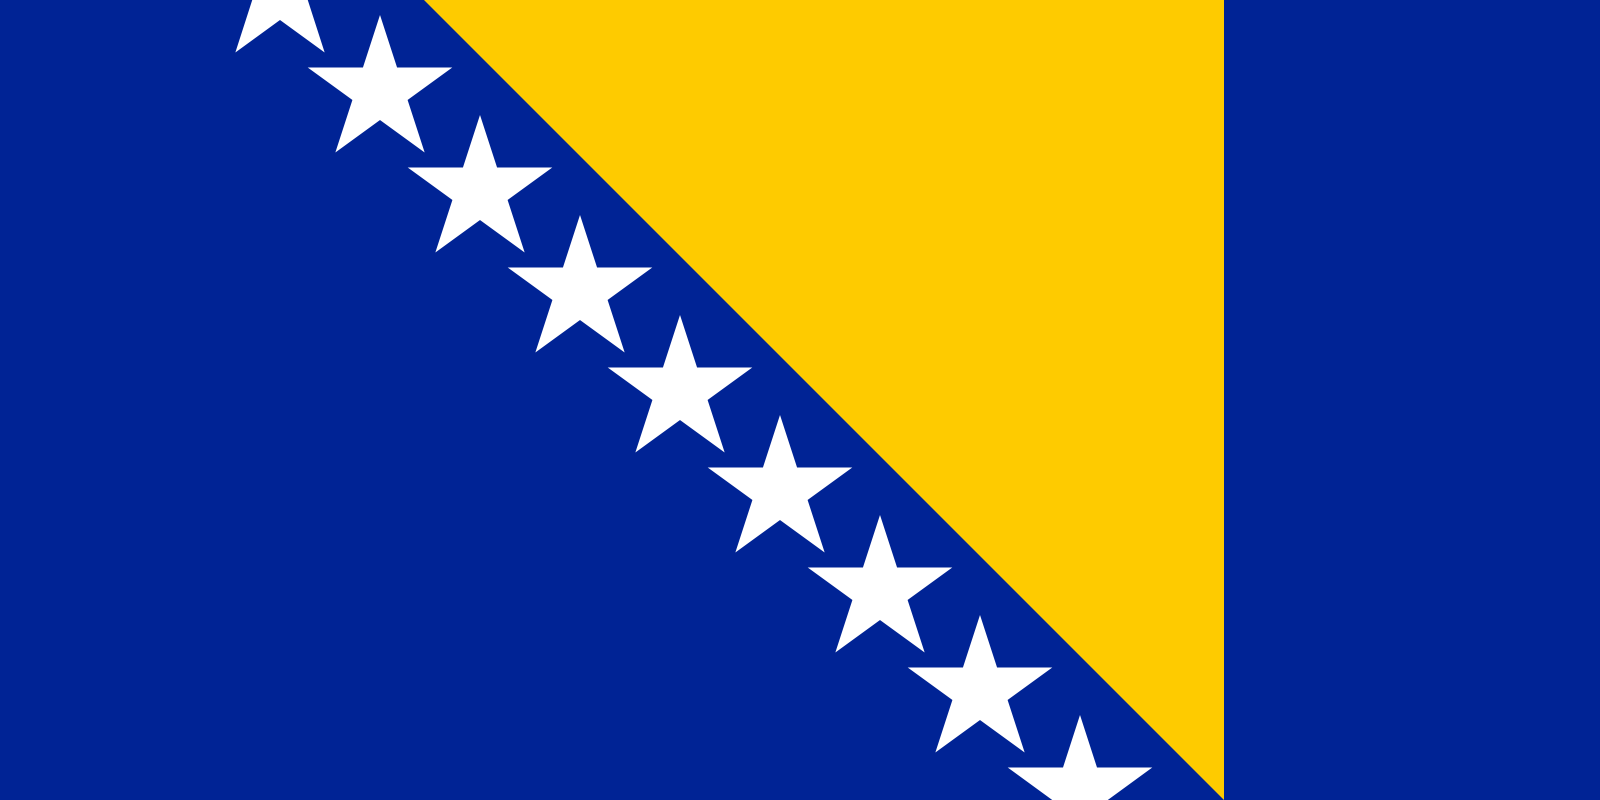 Bild der Staatsflagge Bosnien und Herzegowina - mit einer Auflösung von 1600x800 - Europa